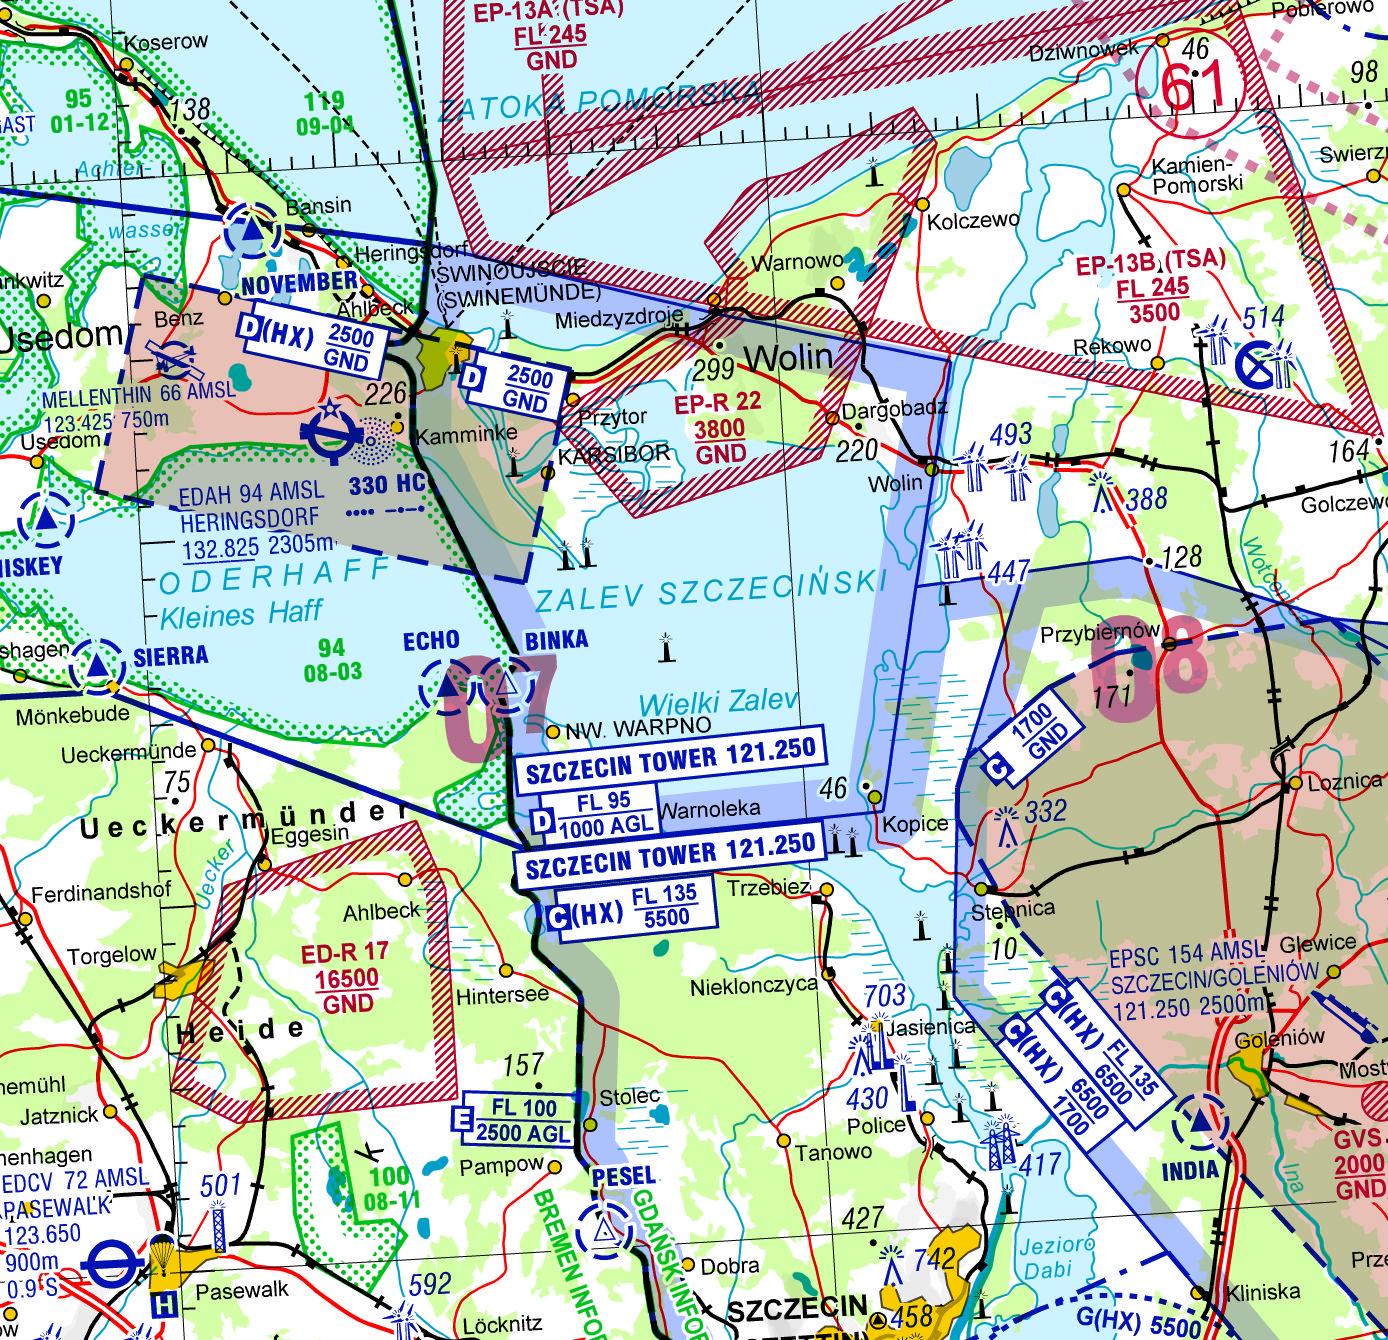 GEN 0 23 Flughafen Heringsdorf EDAH Rufzeichen/Frequenz für Luftraum D (nicht CTR) auf polnischem Gebiet geändert in SZCZECIN TOWER 121.